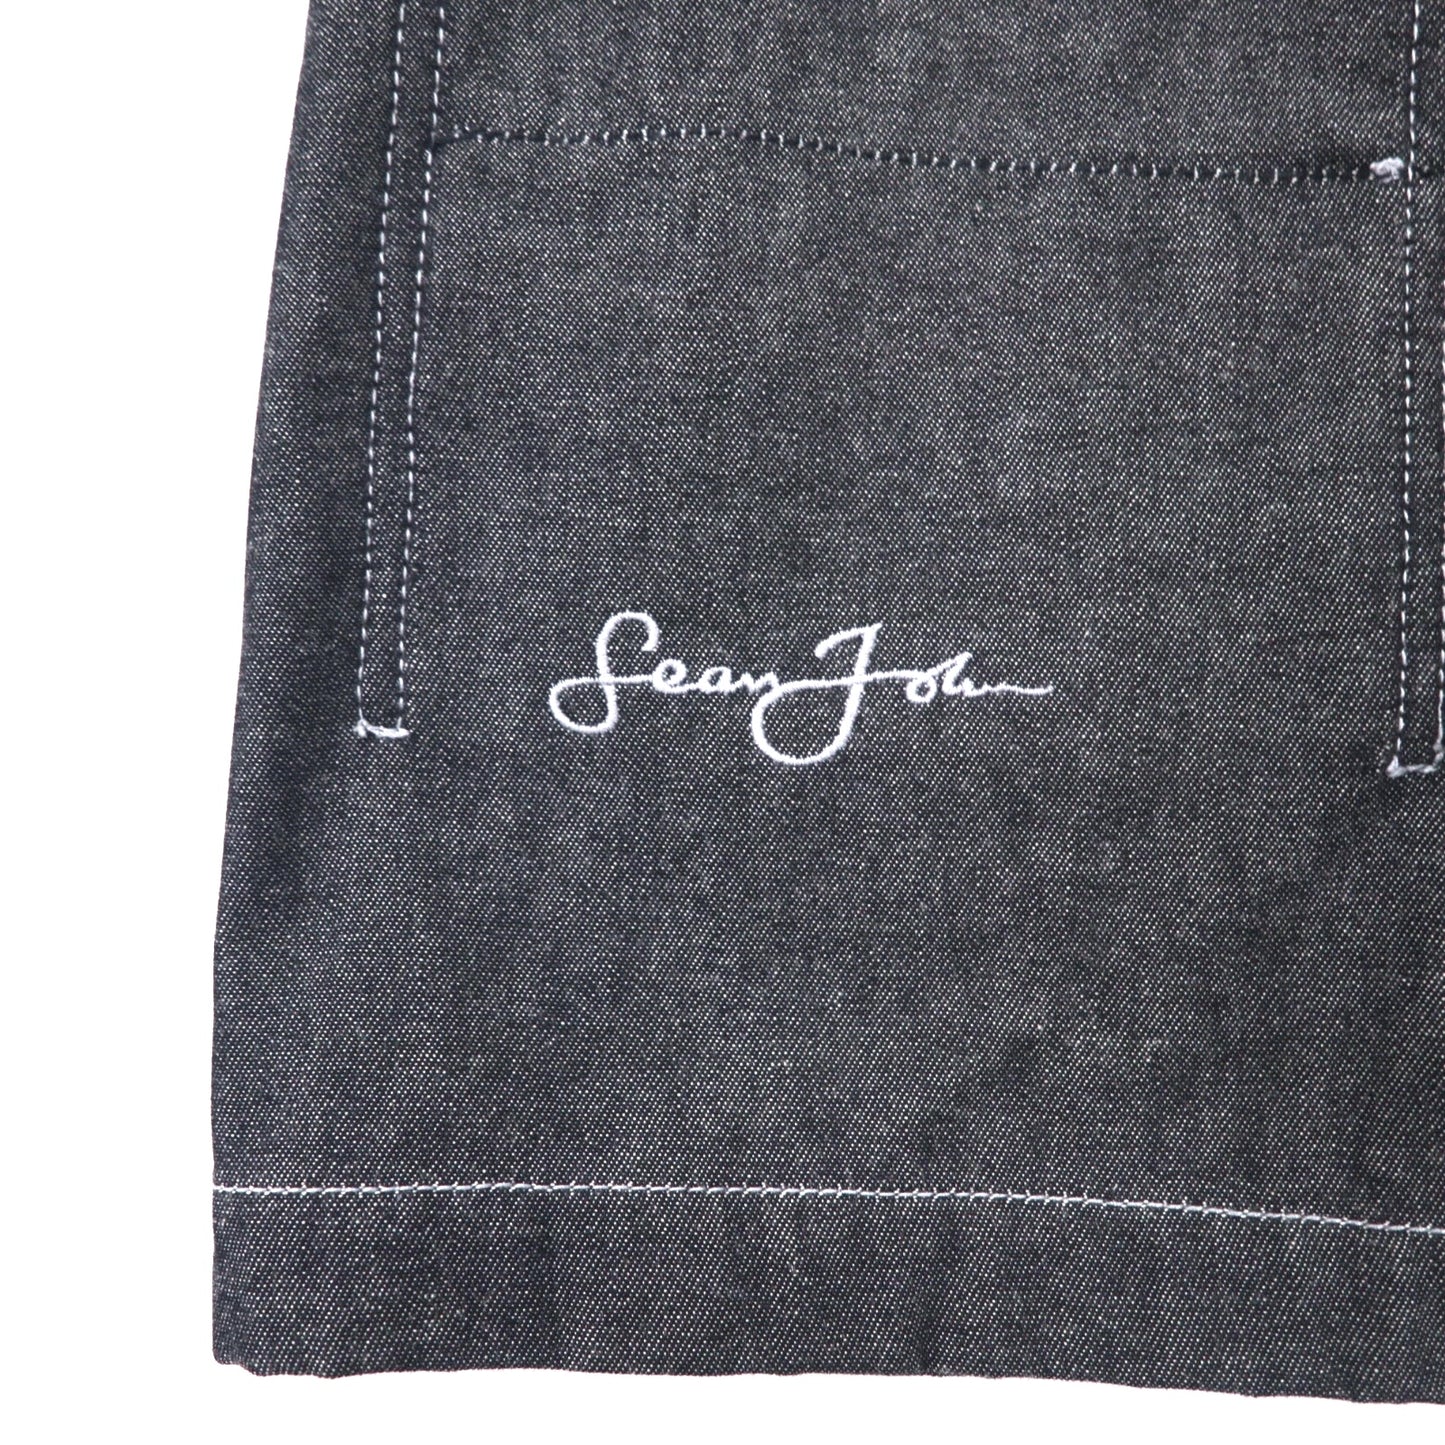 Sean John 00年代 フルジップ デニムジャケット ギミックジャケット XXXL グレー コットン ワンポイントロゴ刺繍 ビッグサイズ